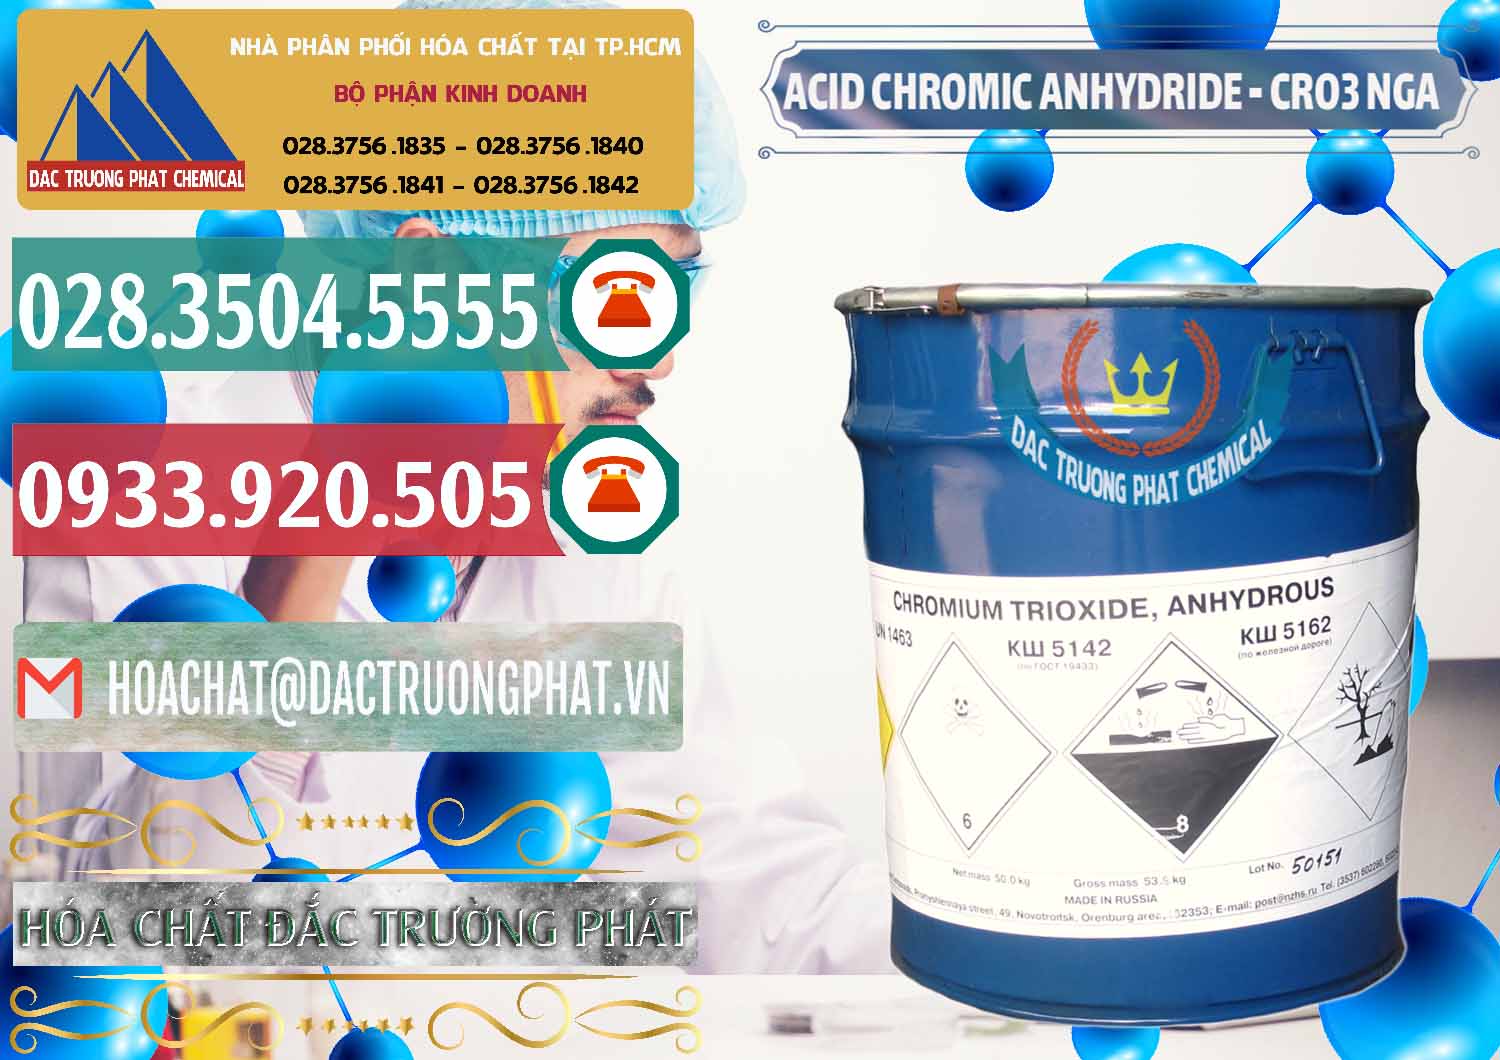 Đơn vị bán và cung cấp Acid Chromic Anhydride - Cromic CRO3 Nga Russia - 0006 - Cty chuyên kinh doanh và cung cấp hóa chất tại TP.HCM - muabanhoachat.vn